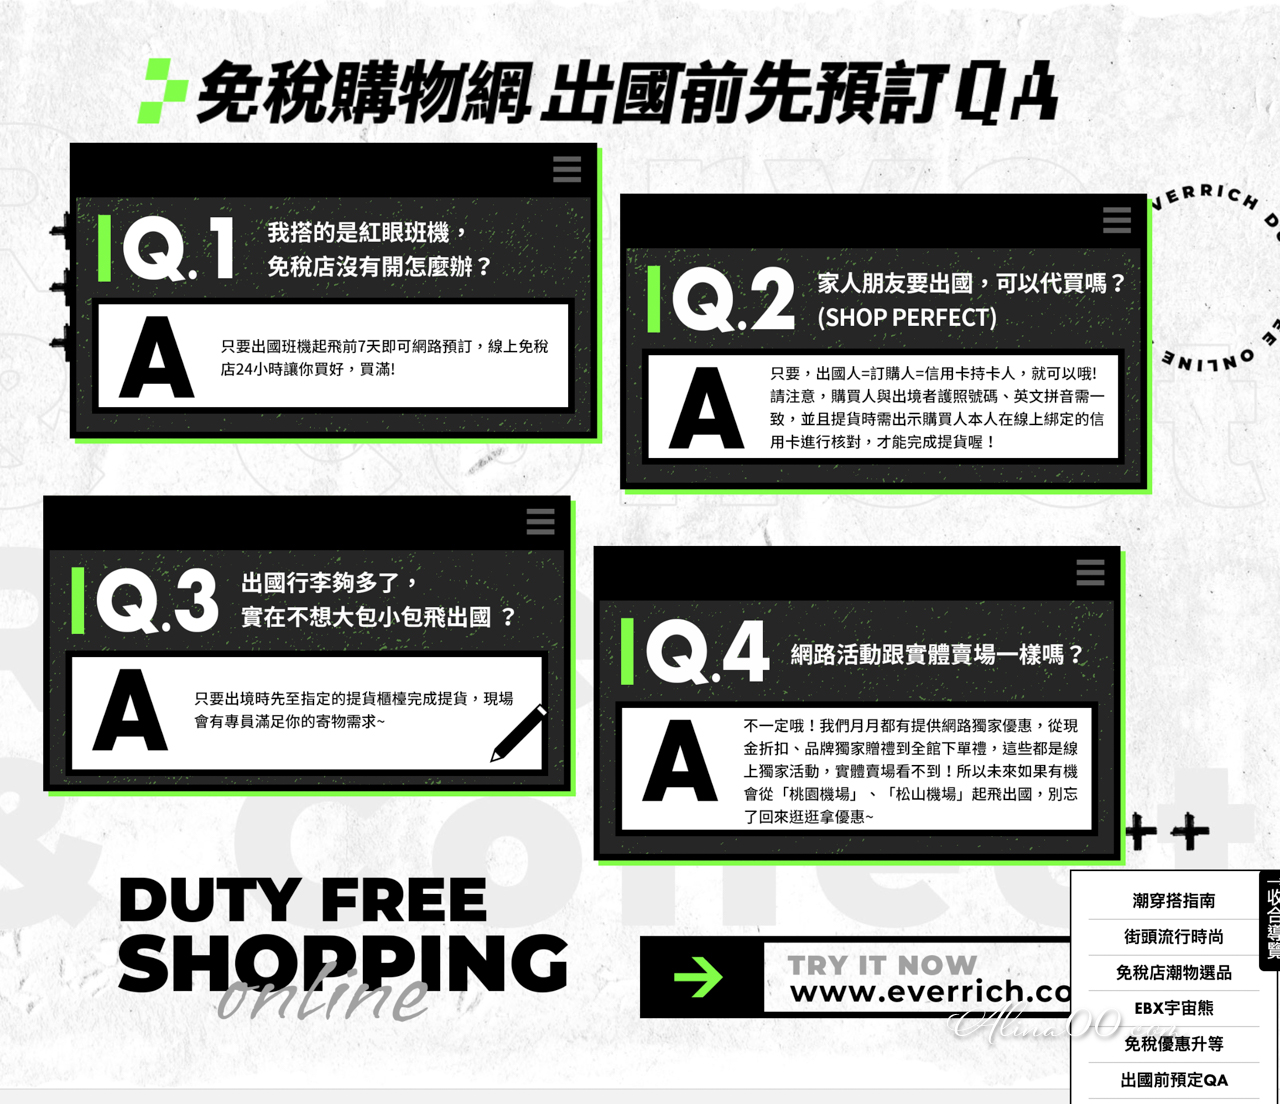 昇恆昌網路購物常見問題